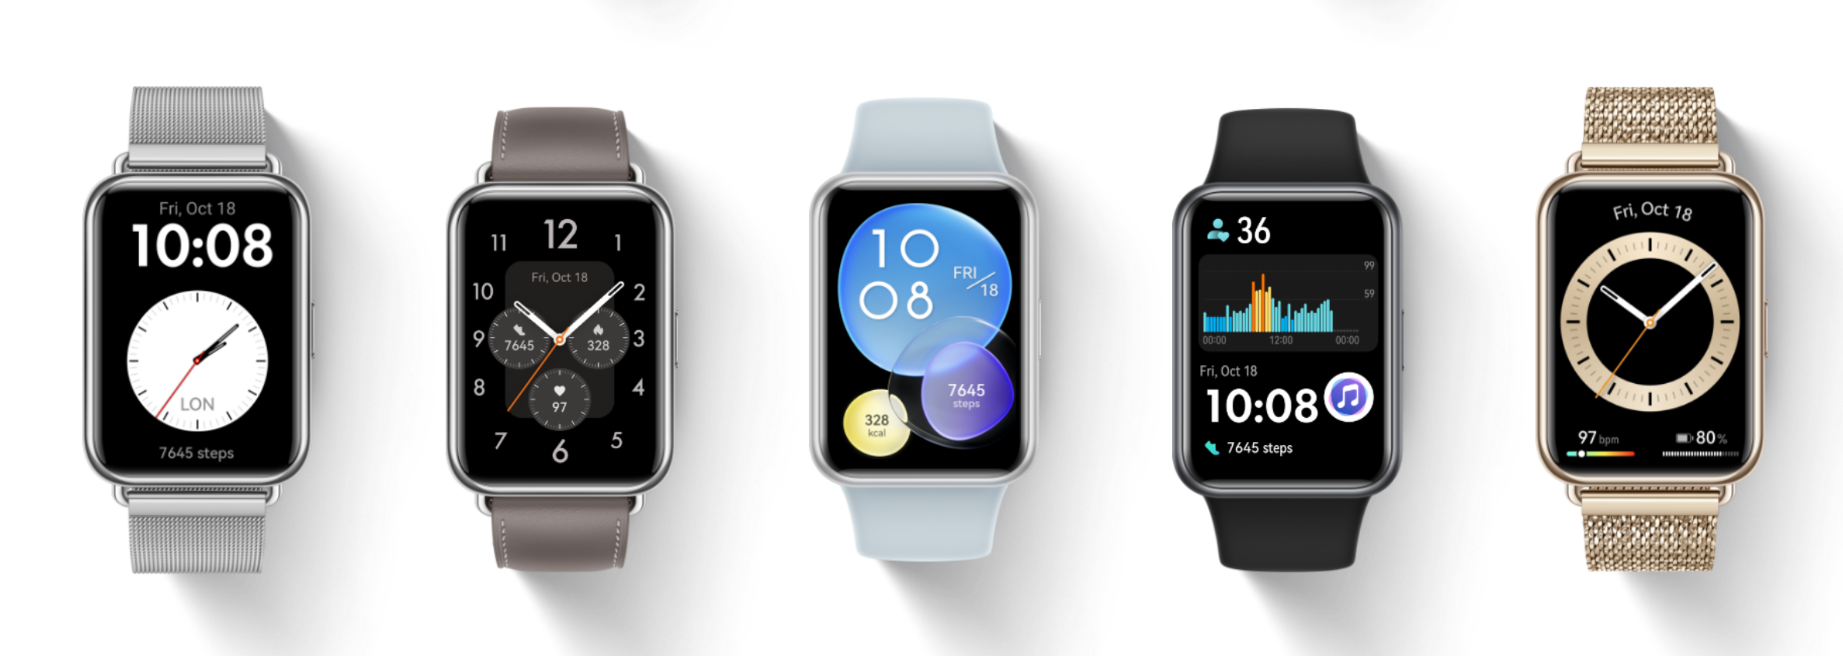 Huawei Watch 3, análisis: review con características, precio y